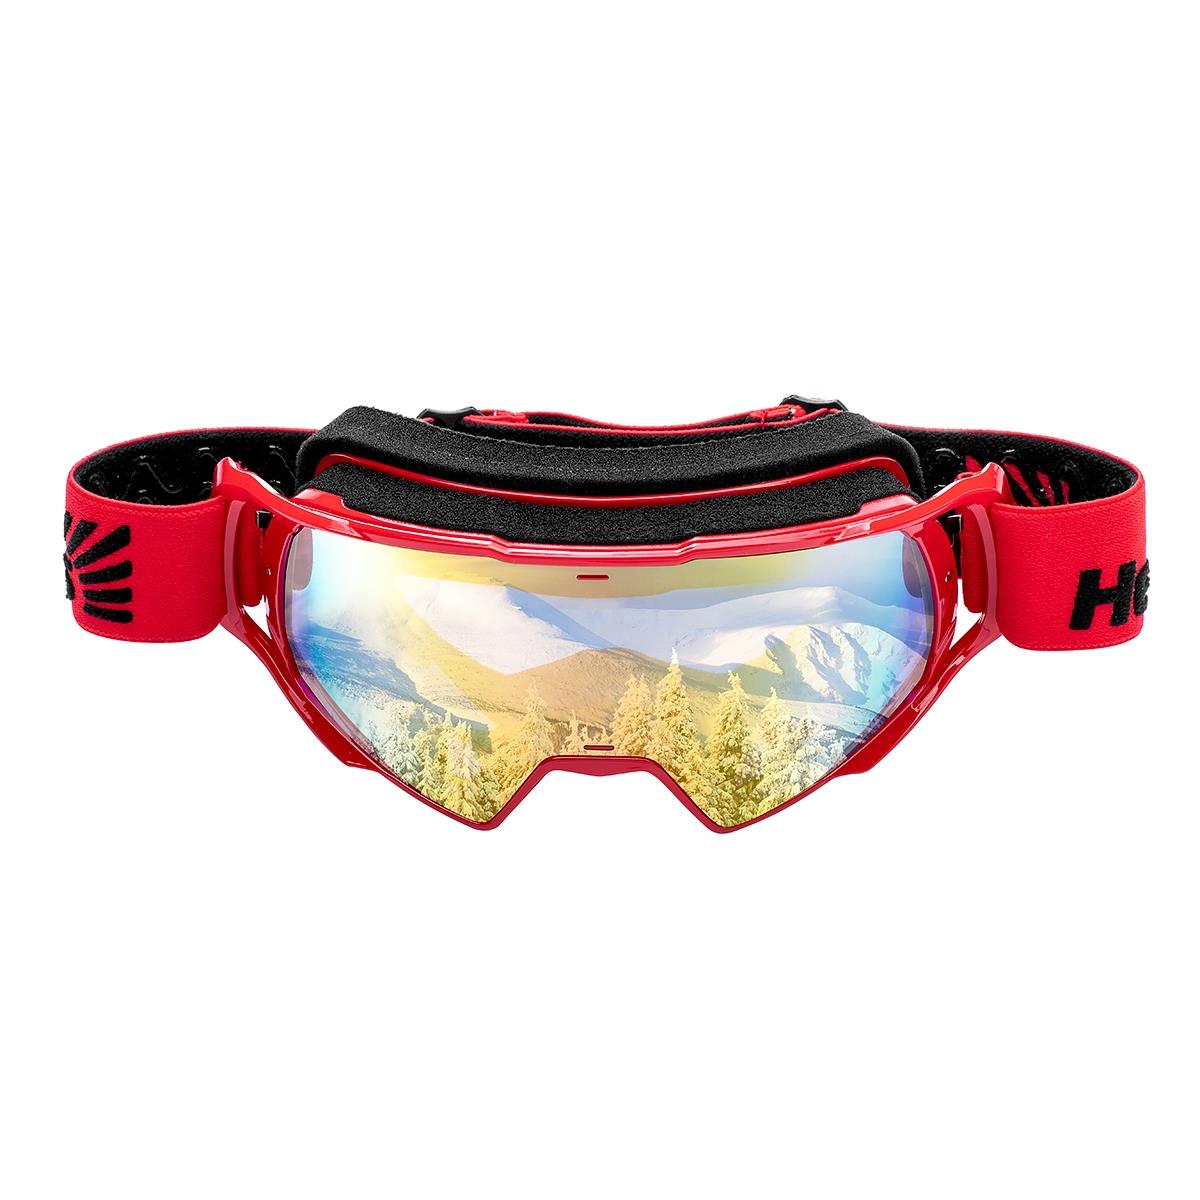 Очки горнолыжные HS-MT-023 Helios очки для плавания взрослые uv защита